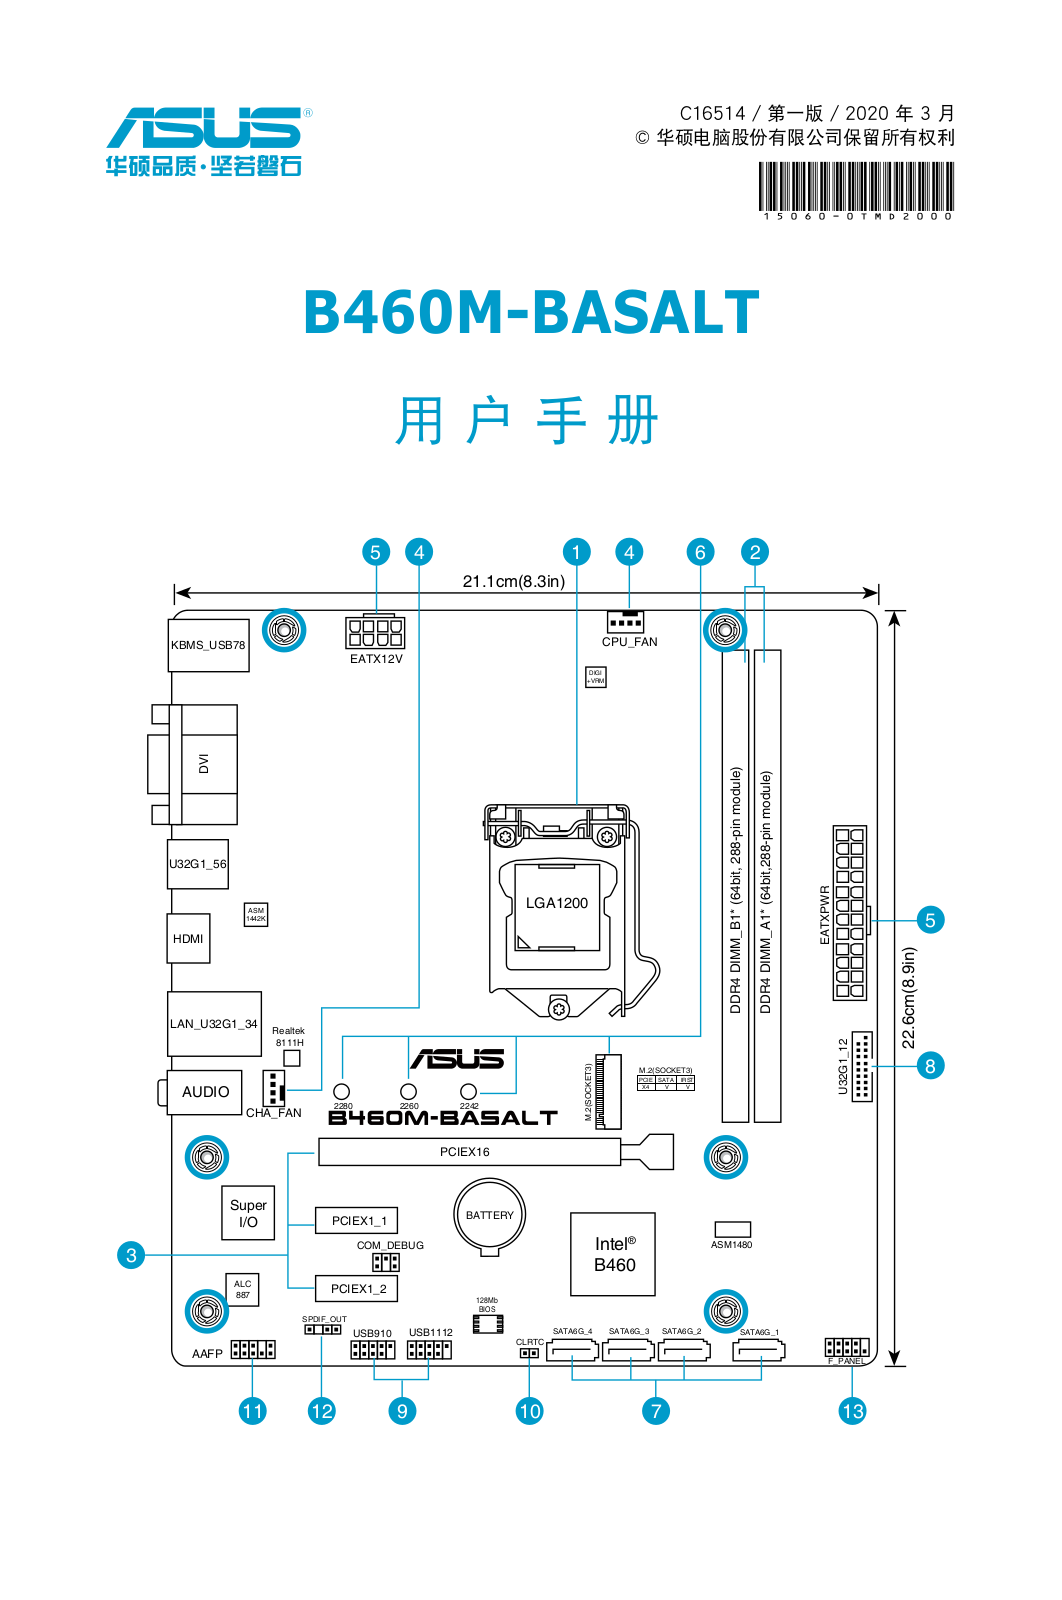 Asus B460M-BASALT User’s Manual